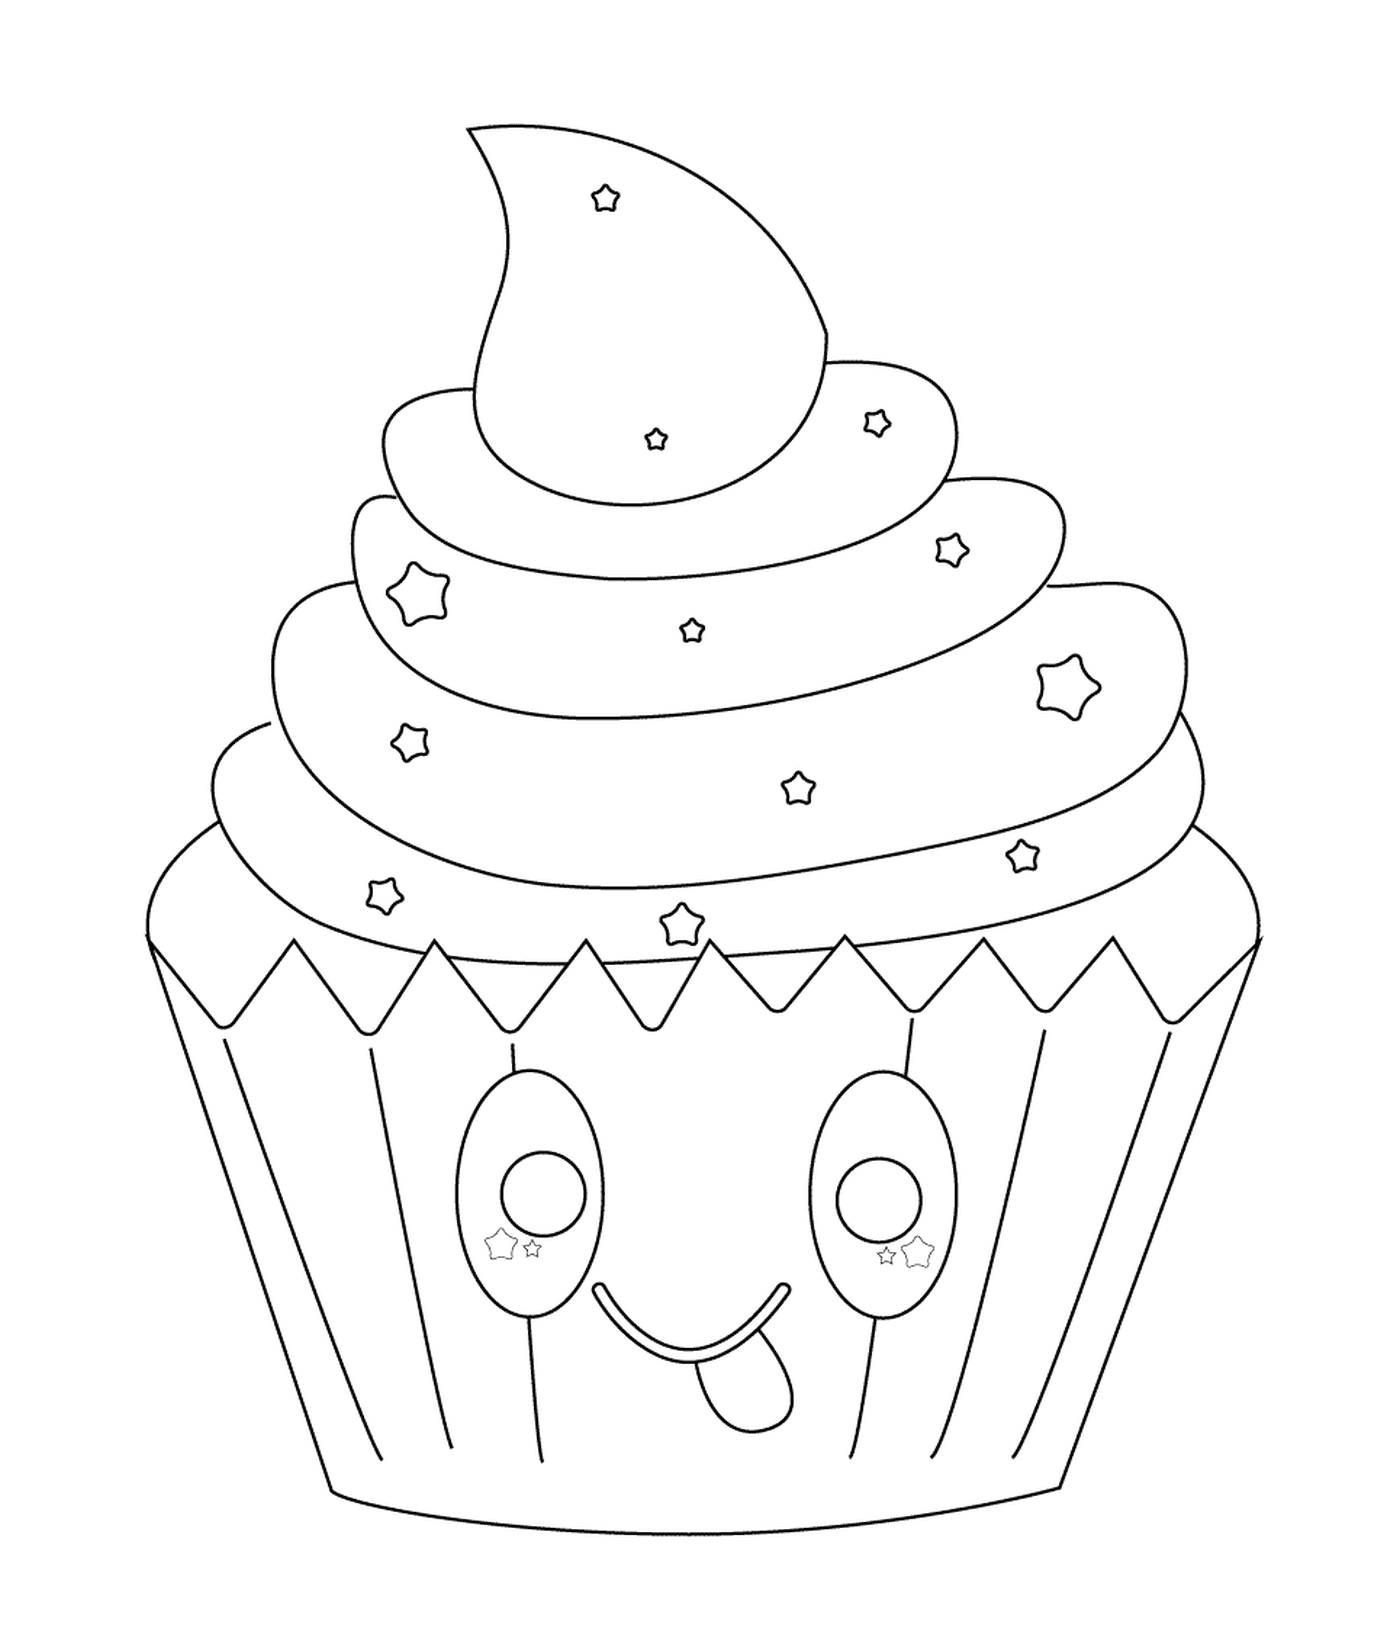  Cupcake kawaii con estrellas 